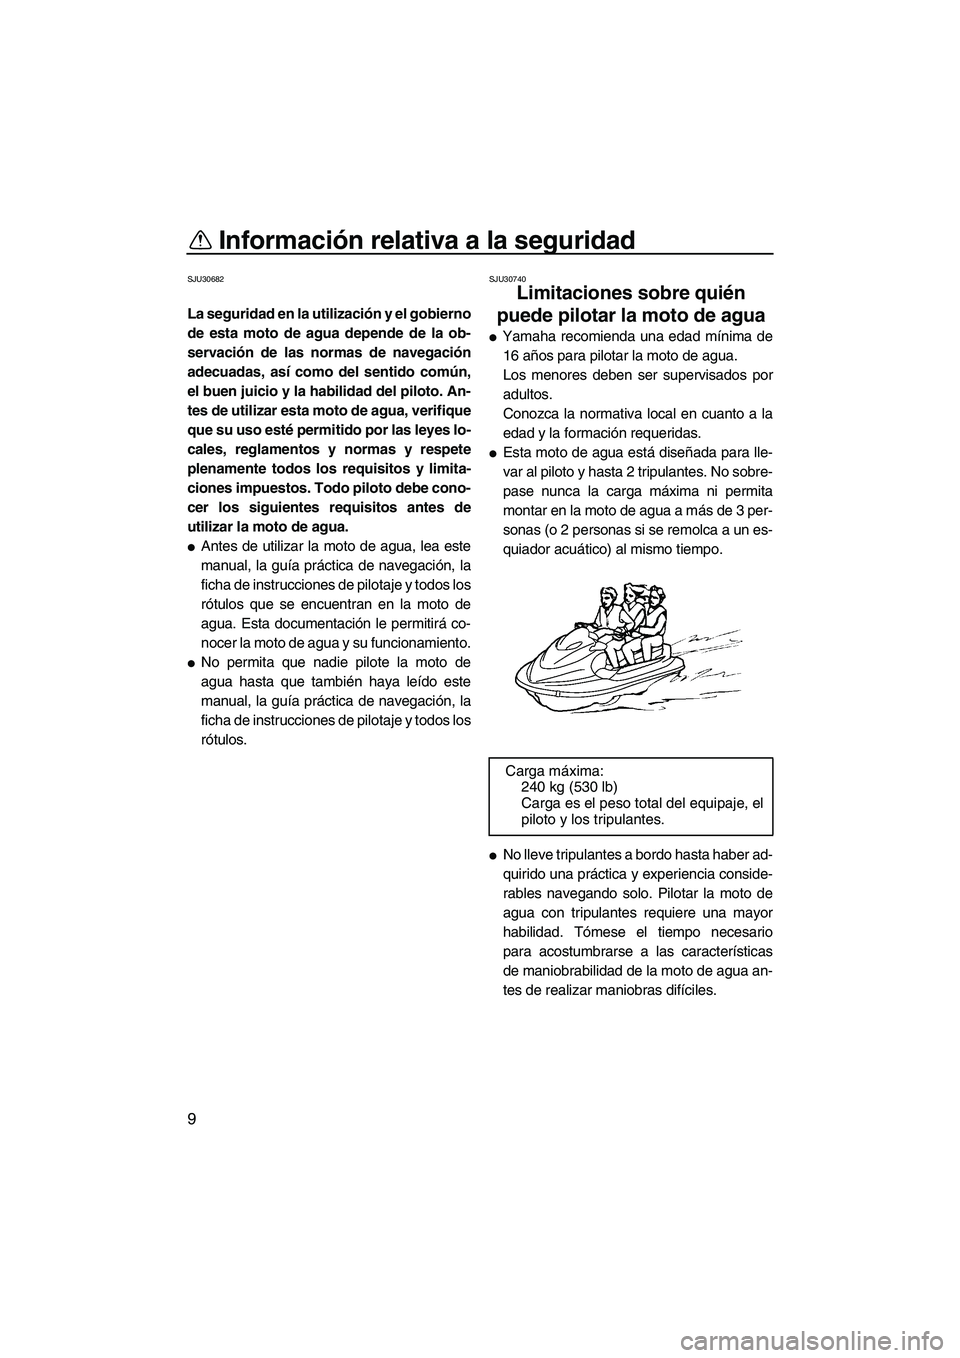 YAMAHA VX SPORT 2009  Manuale de Empleo (in Spanish) Información relativa a la seguridad
9
SJU30682
La seguridad en la utilización y el gobierno
de esta moto de agua depende de la ob-
servación de las normas de navegación
adecuadas, así como del se